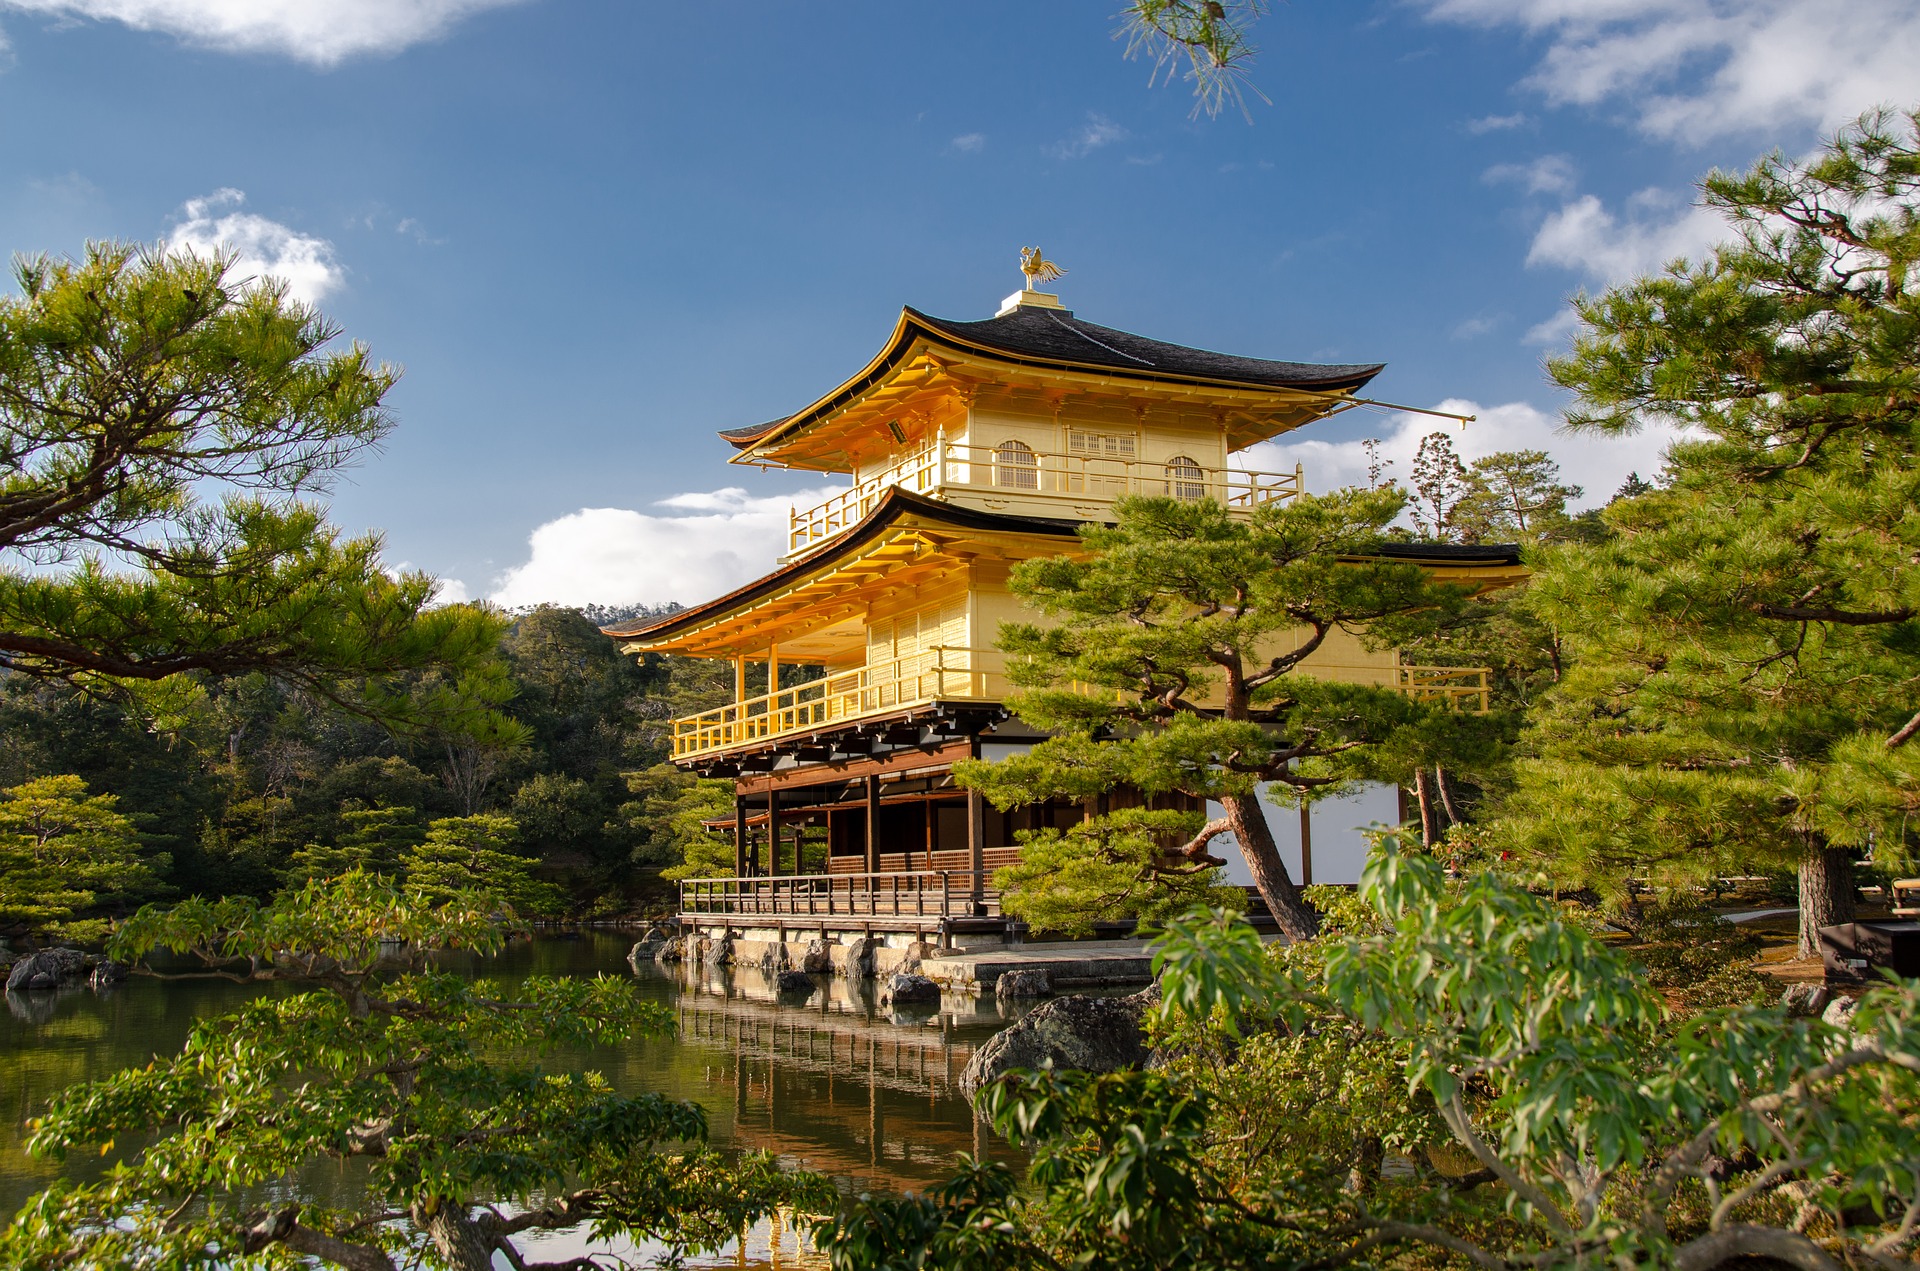 Япония с 11 октября готова принимать иностранных туристов без ограничений